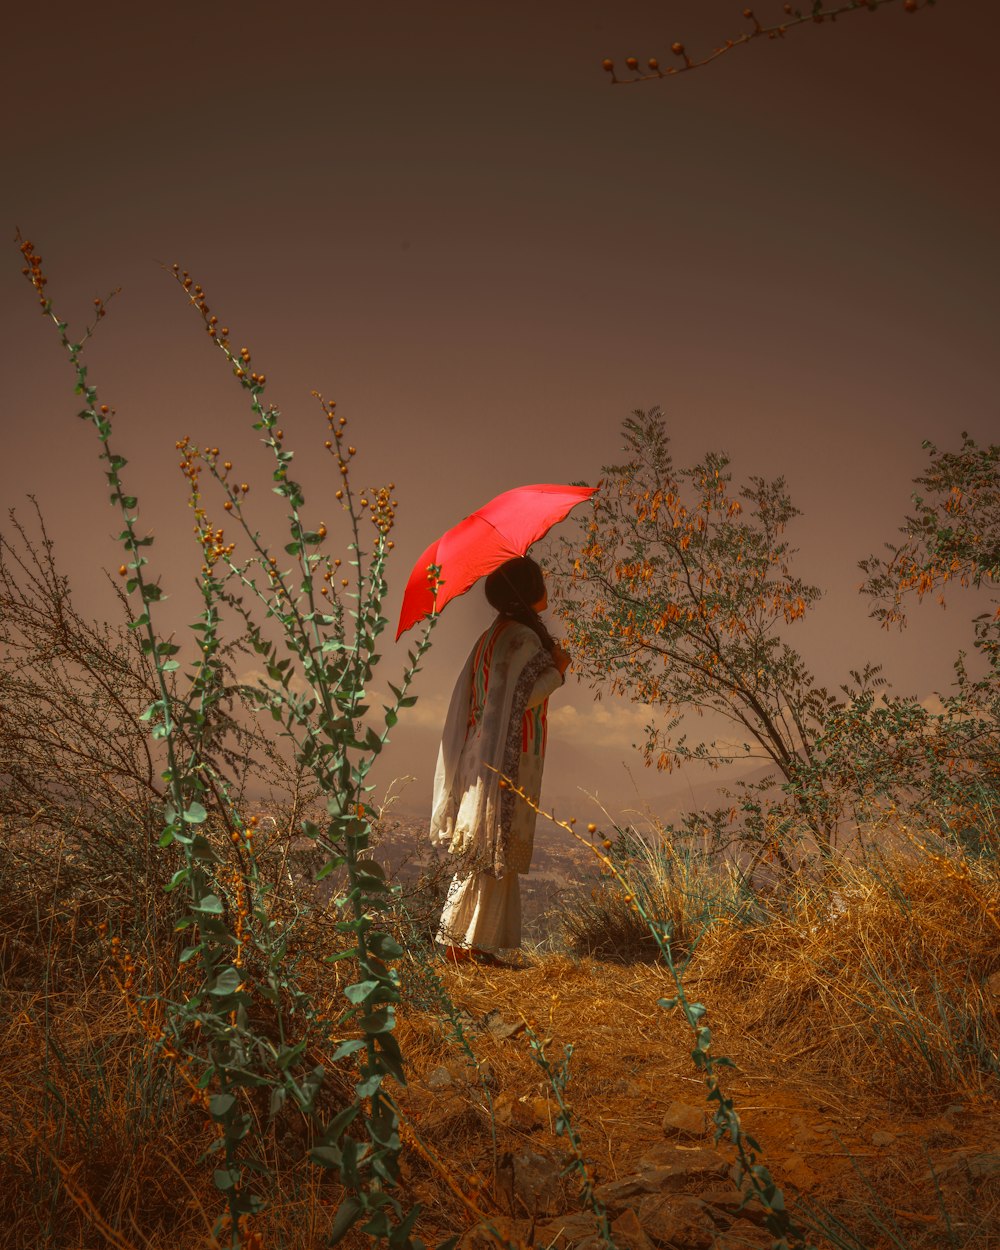 회색 드레스를 입은 여자는 낮에 갈색 잔디밭에 서 있는 빨간 우산을 들고 있다